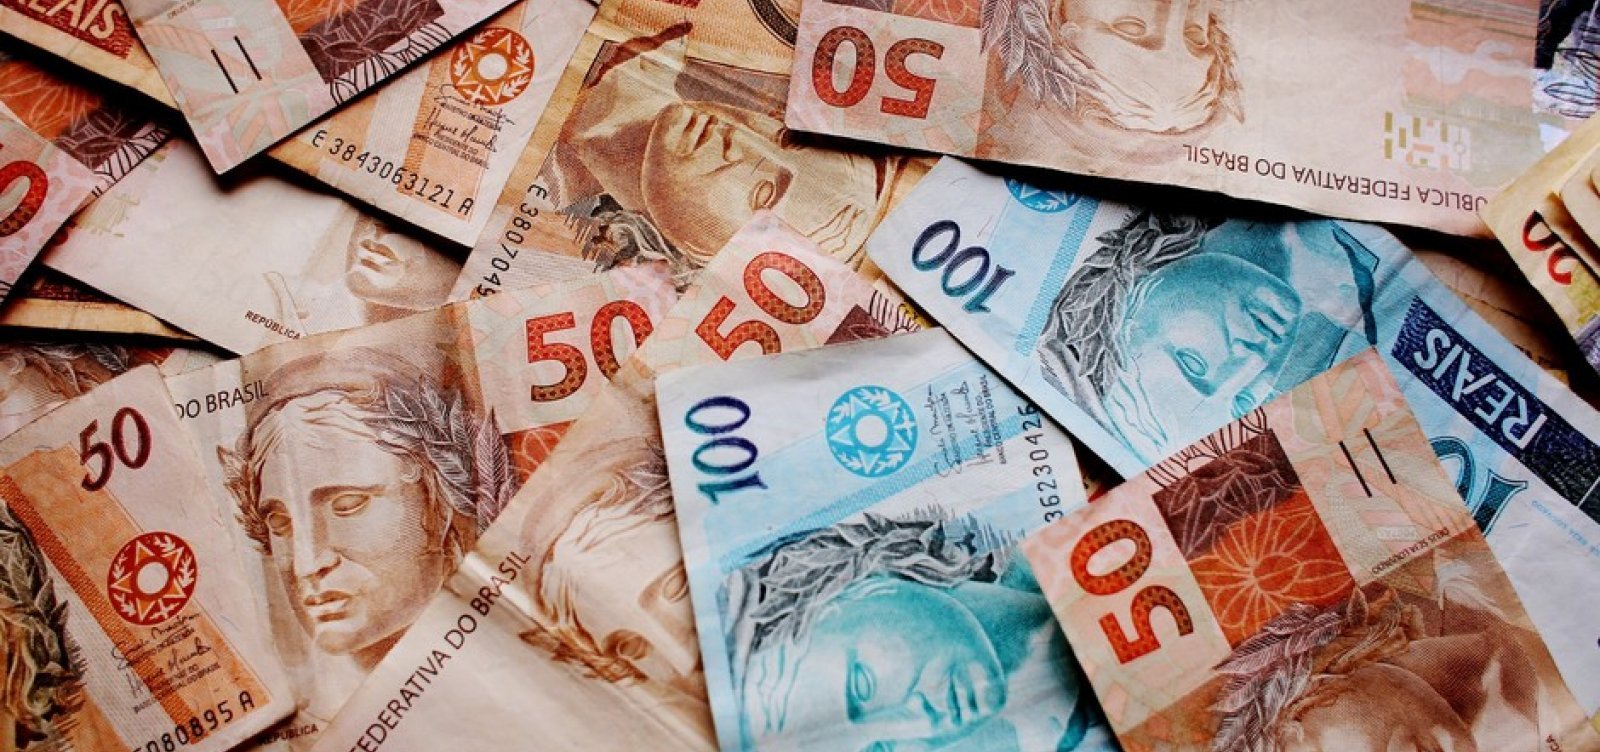 Renda média no Brasil foi R$ 1.380 em 2020; confira os maiores rendimentos